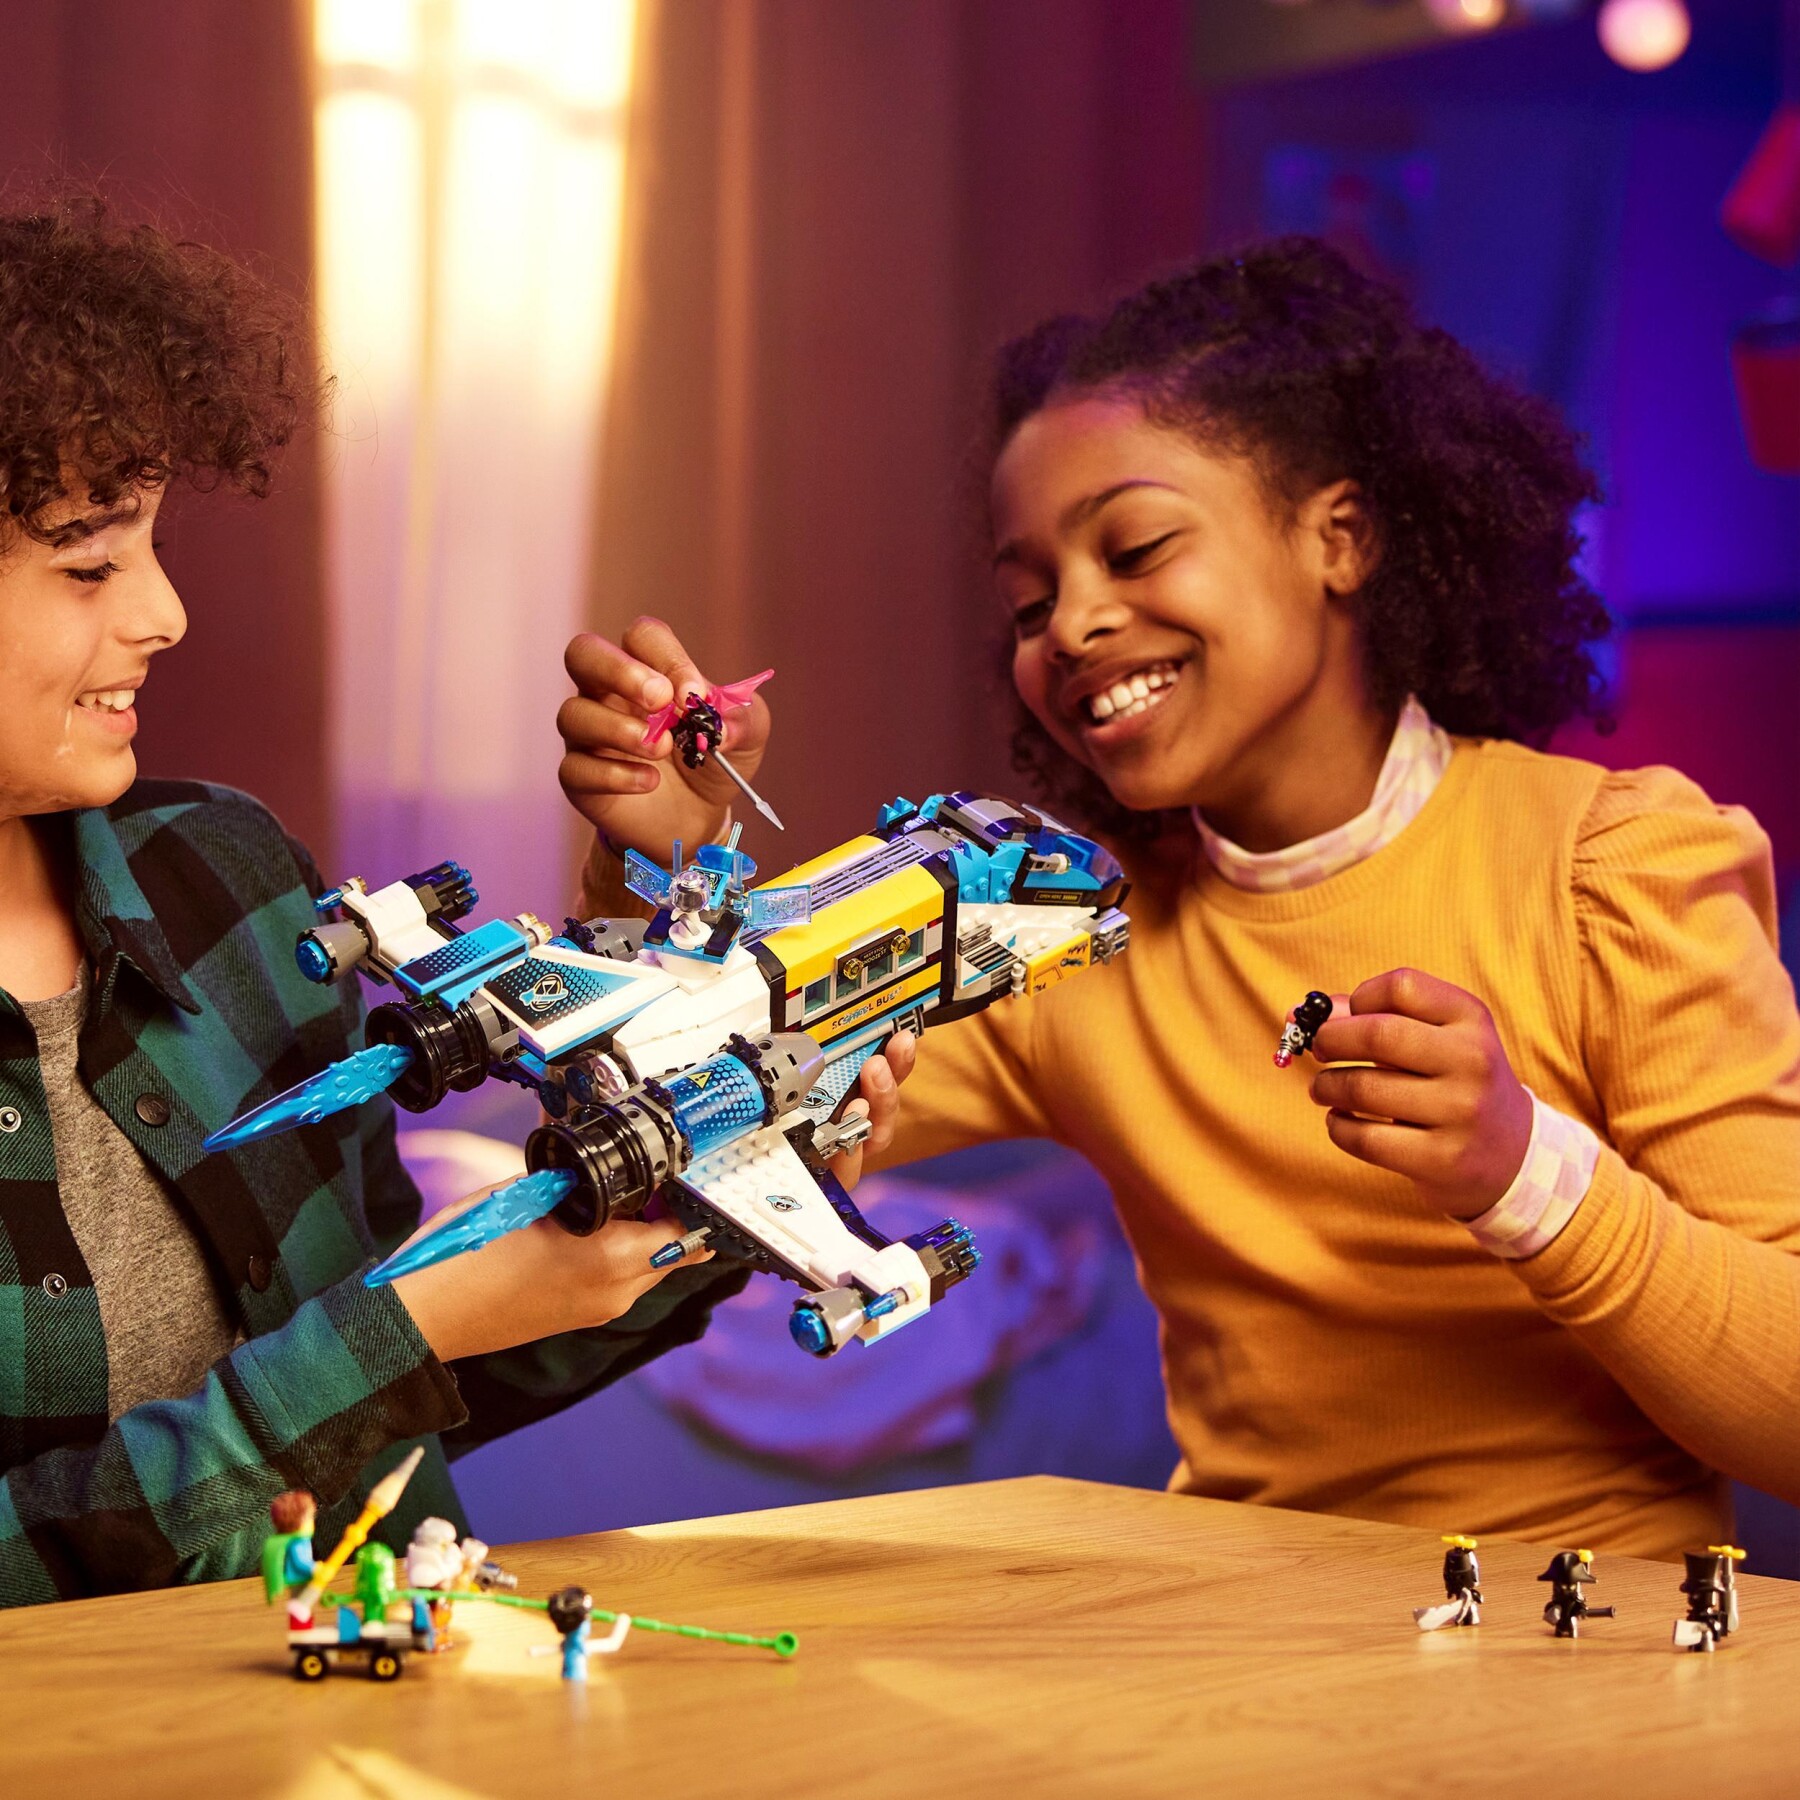 Lego dreamzzz 71460 il bus spaziale del signor oz, astronave giocattolo da costruire in 2 modi con mateo, z-blob e logan - Lego